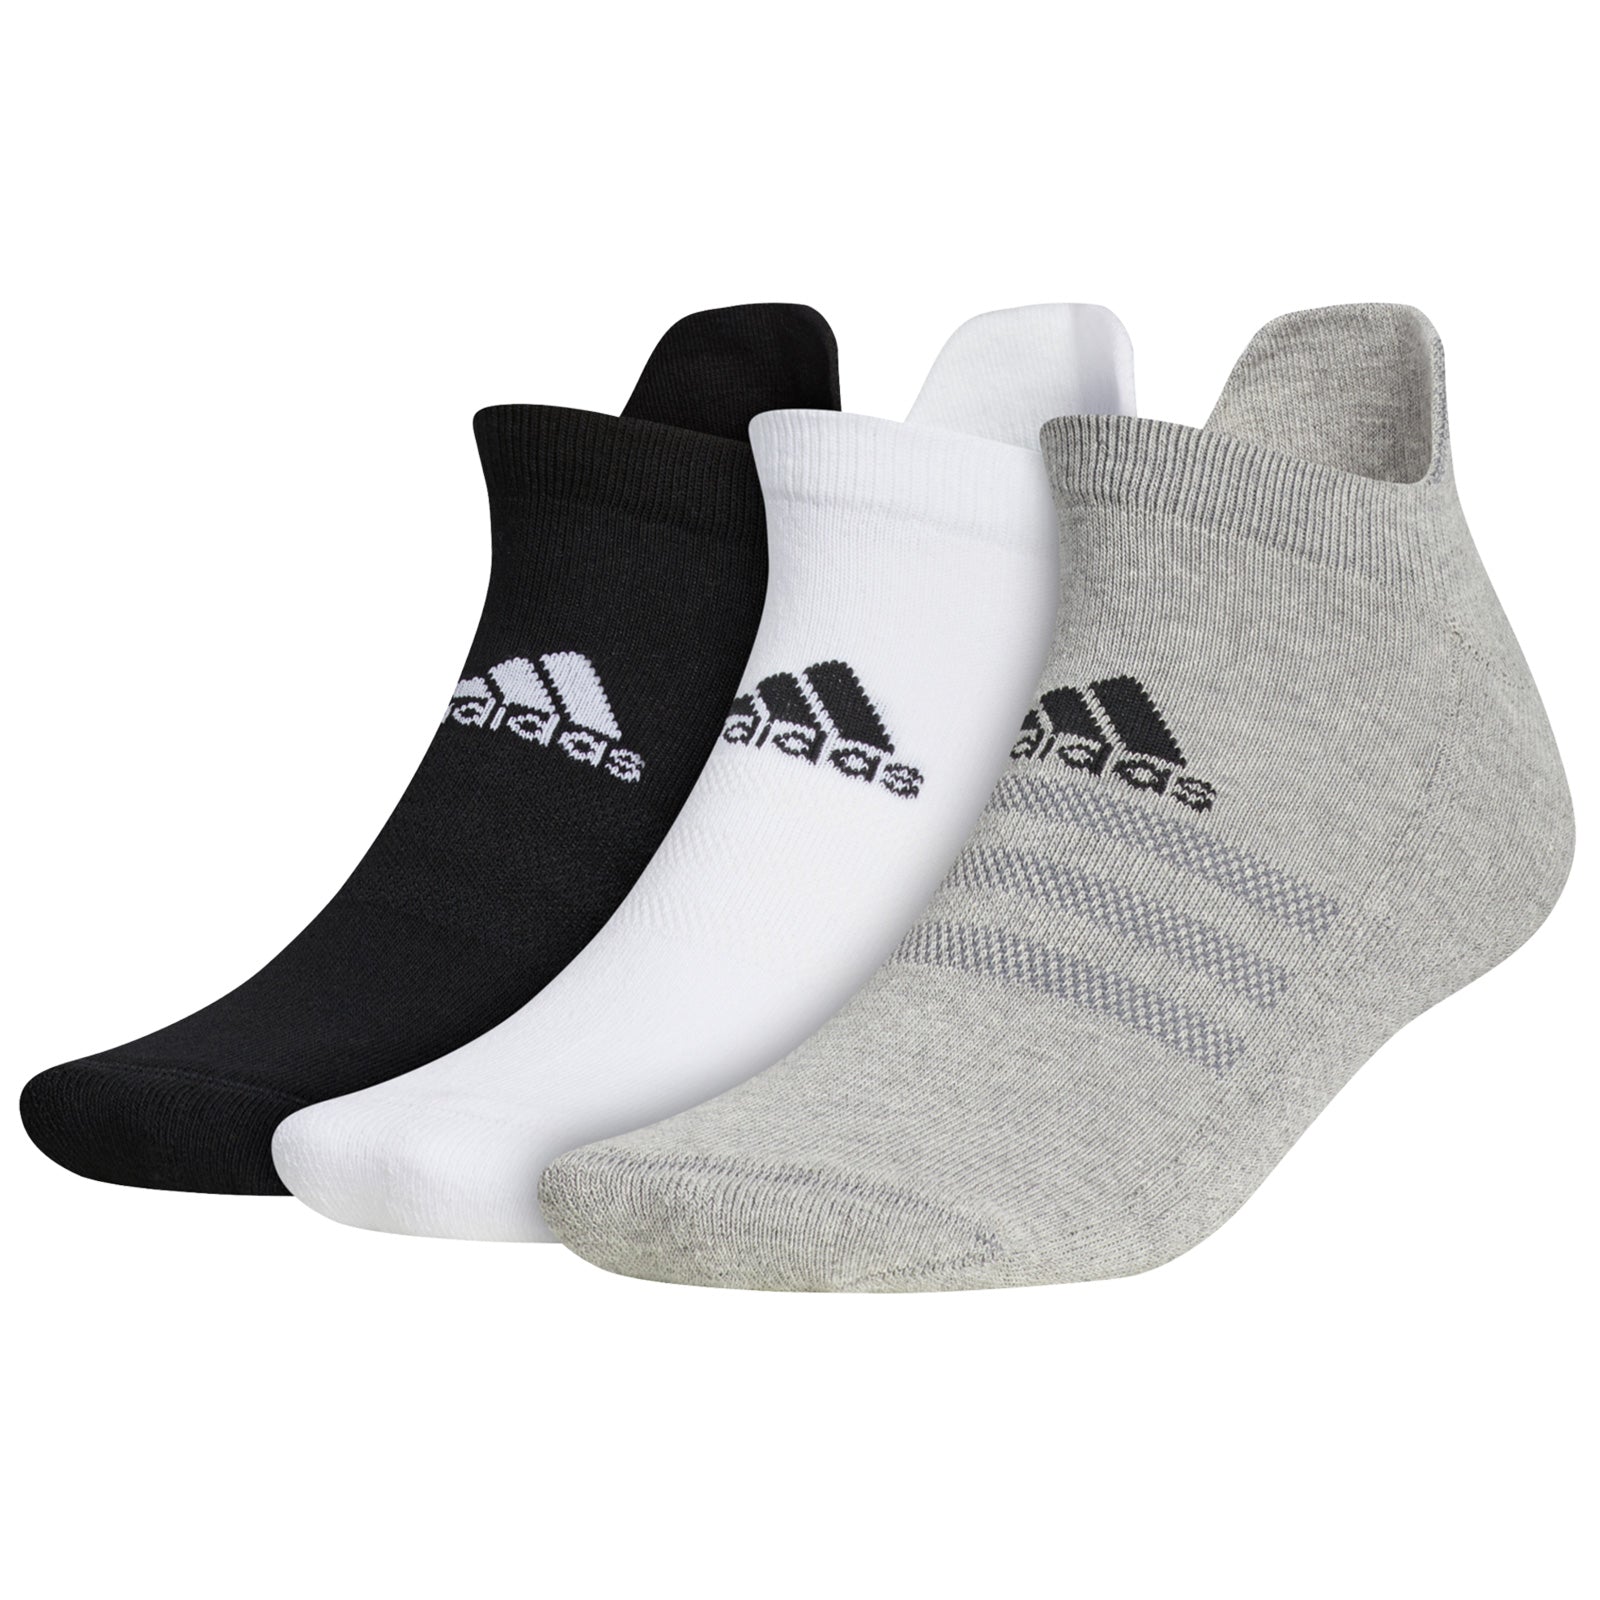 adidas Mens Ankle Socks (3 Pairs)